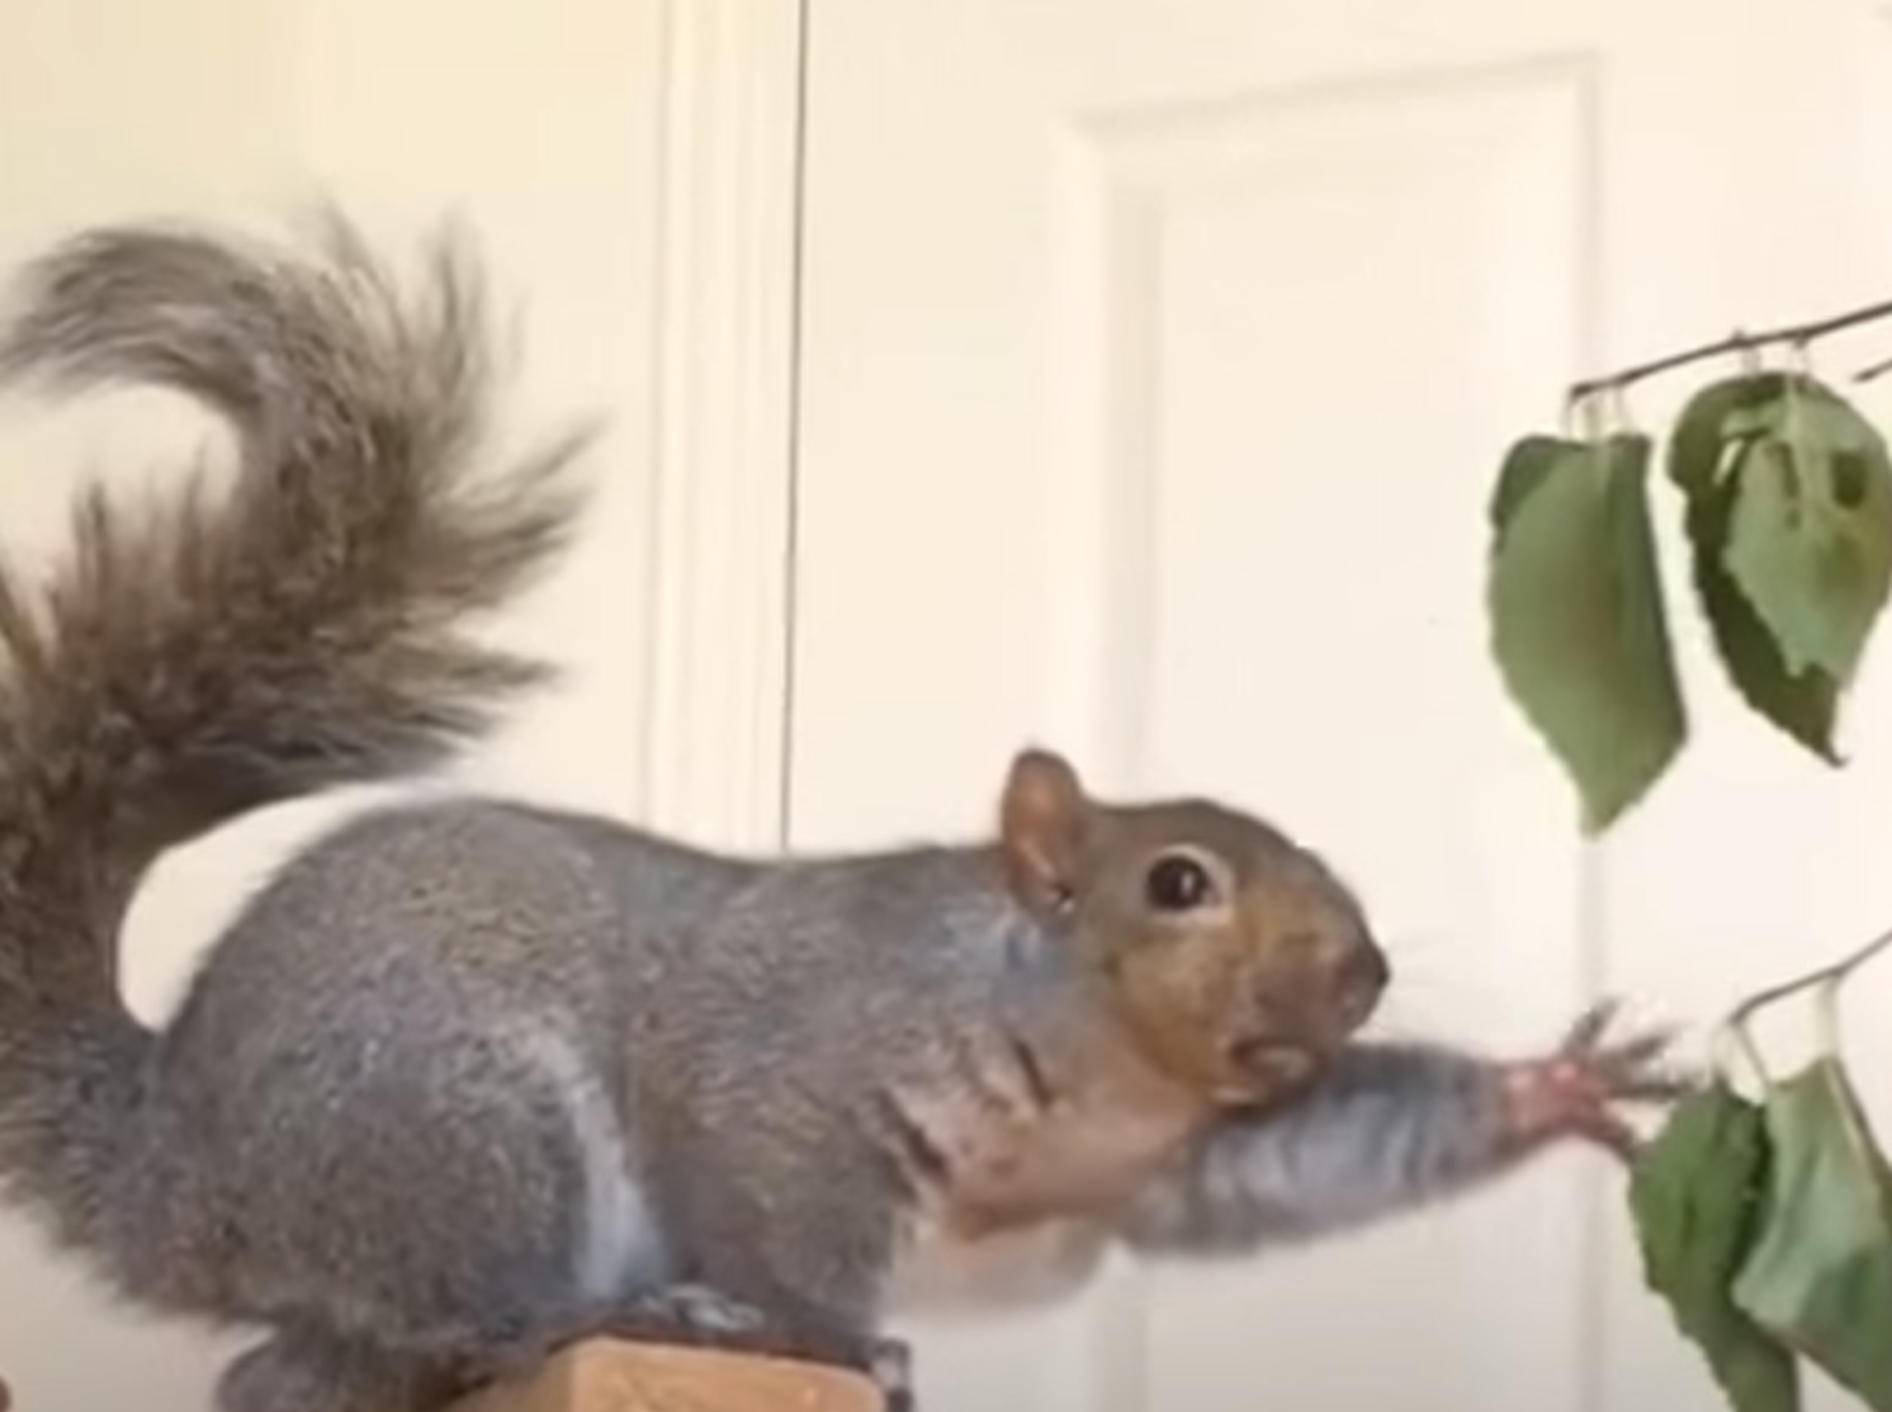 Gerettetes Eichhörnchen macht auf Entertainer – Bild: YouTube / The Dodo